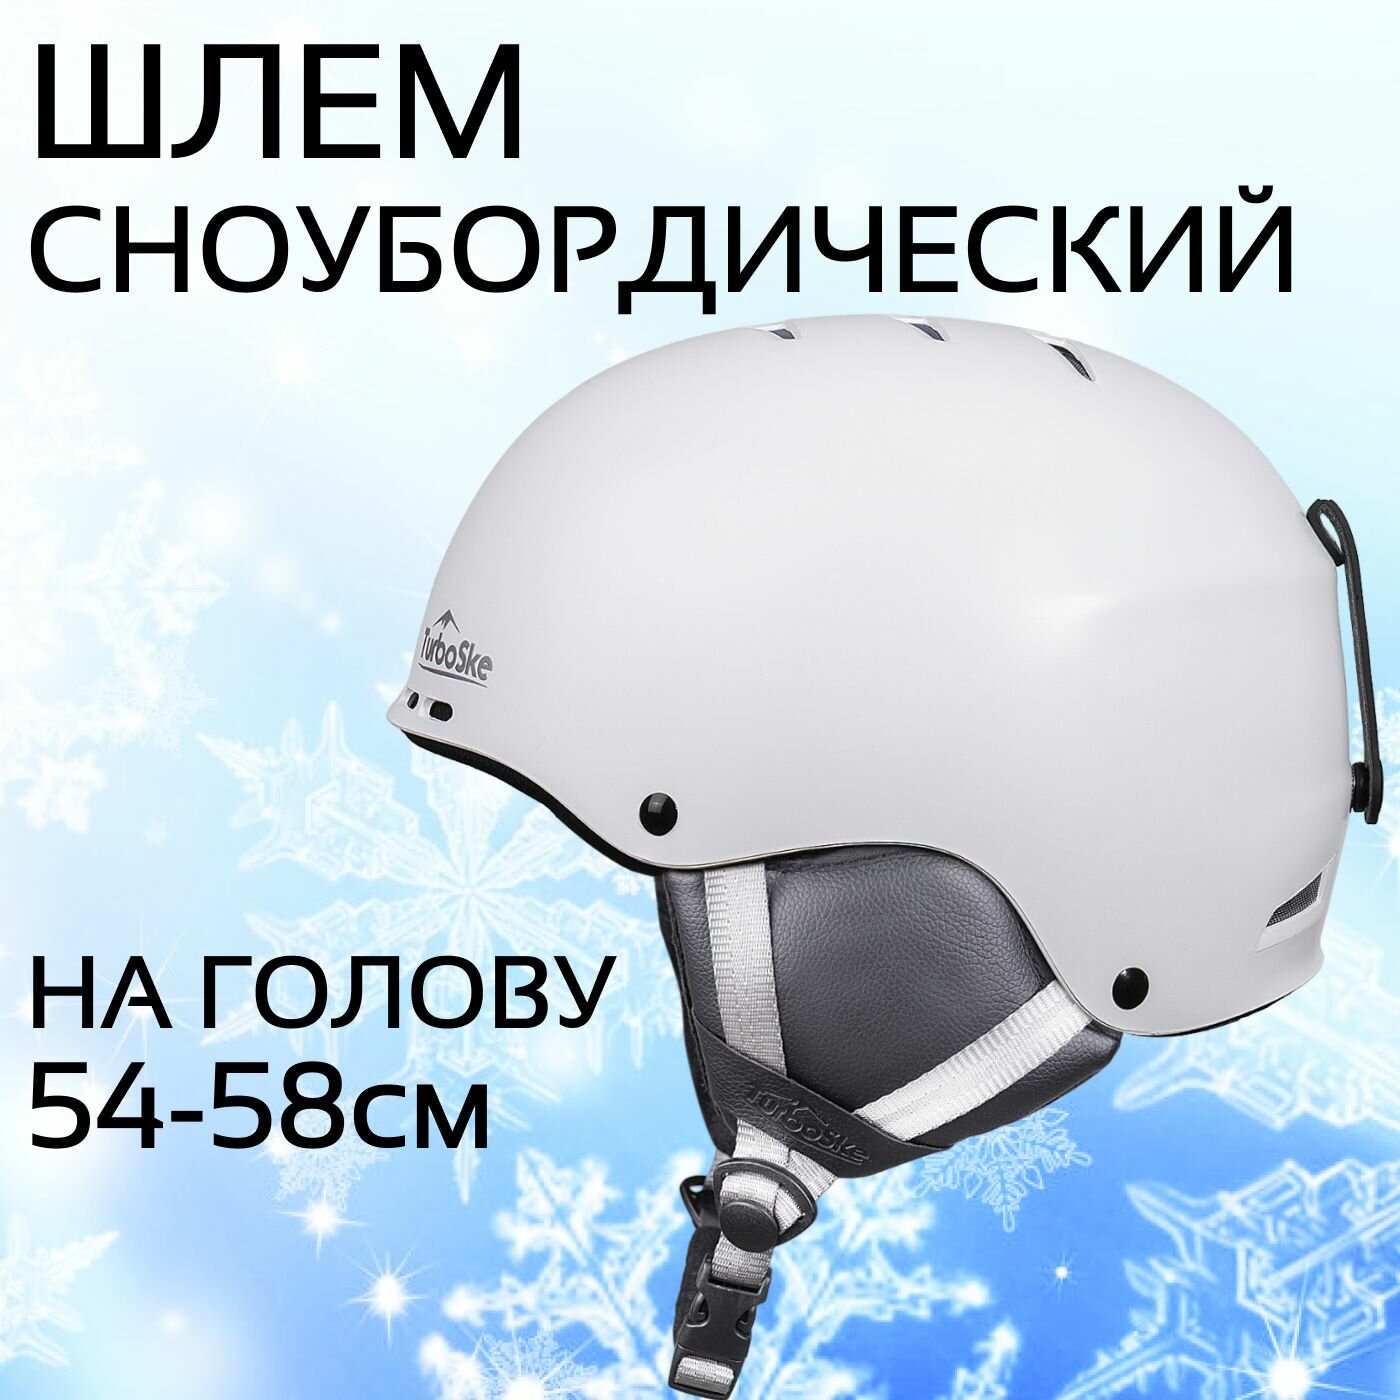 Шлем горнолыжный для зимних видов спорта сноубордический взрослый размер M (54-58 см)